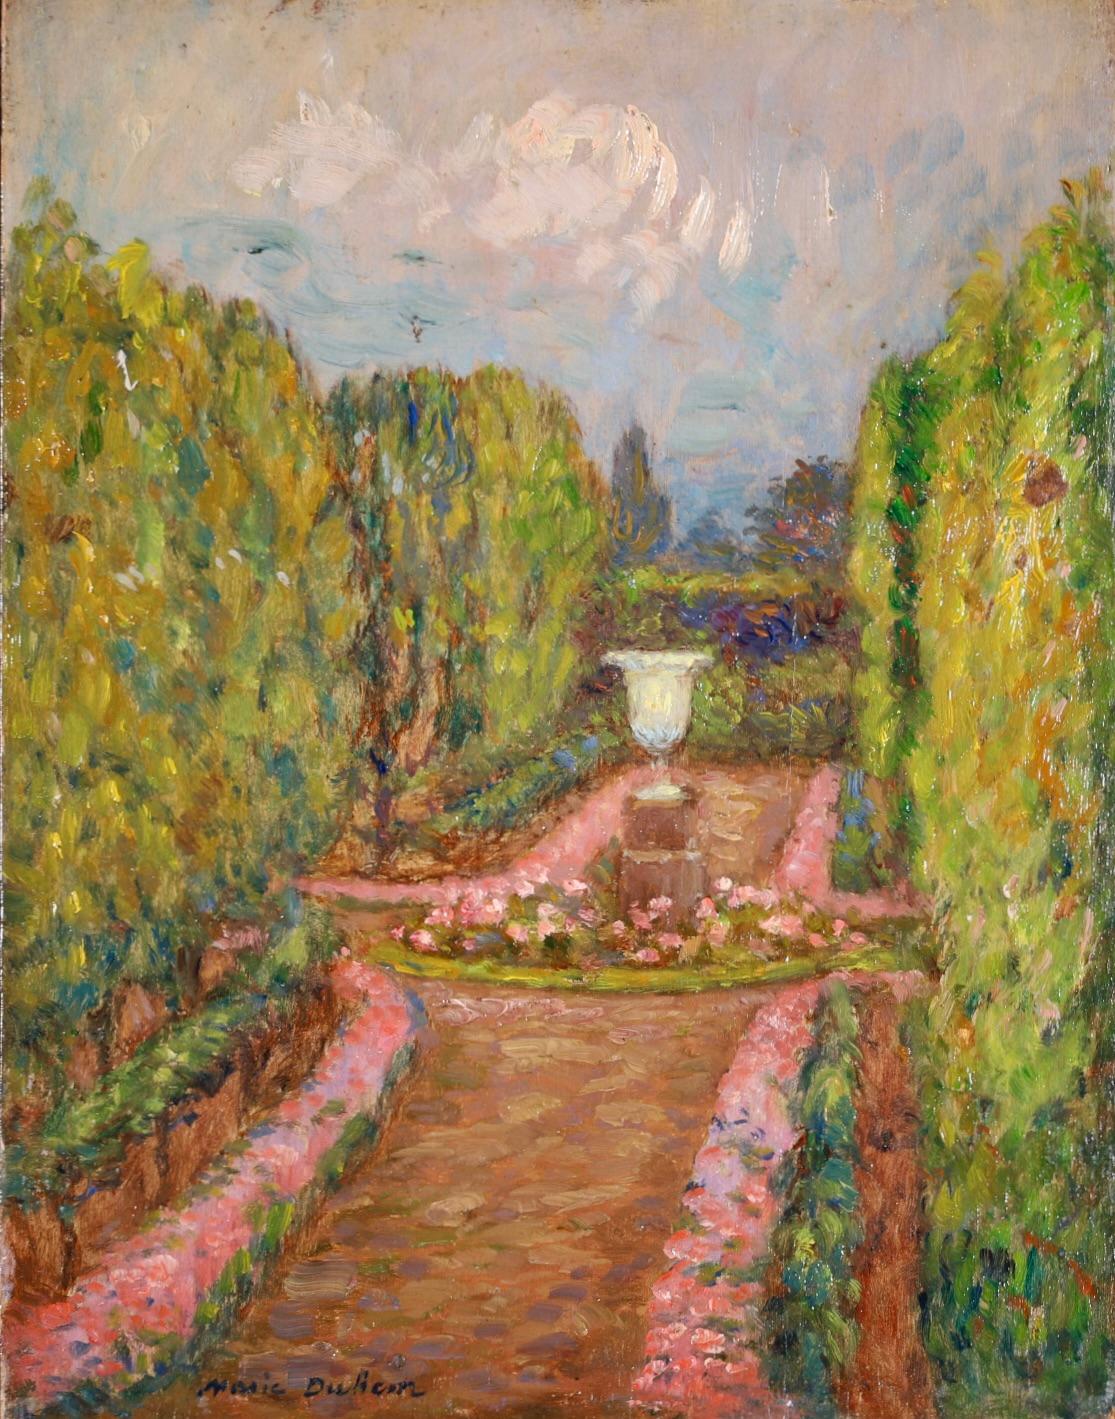 Paysage de jardin impressionniste, huile sur panneau, vers 1902, de la peintre française Marie Duhem. L'œuvre représente une jardinière blanche ornée au centre d'une allée de jardin. Les chemins sont bordés de parterres de fleurs roses et de haies